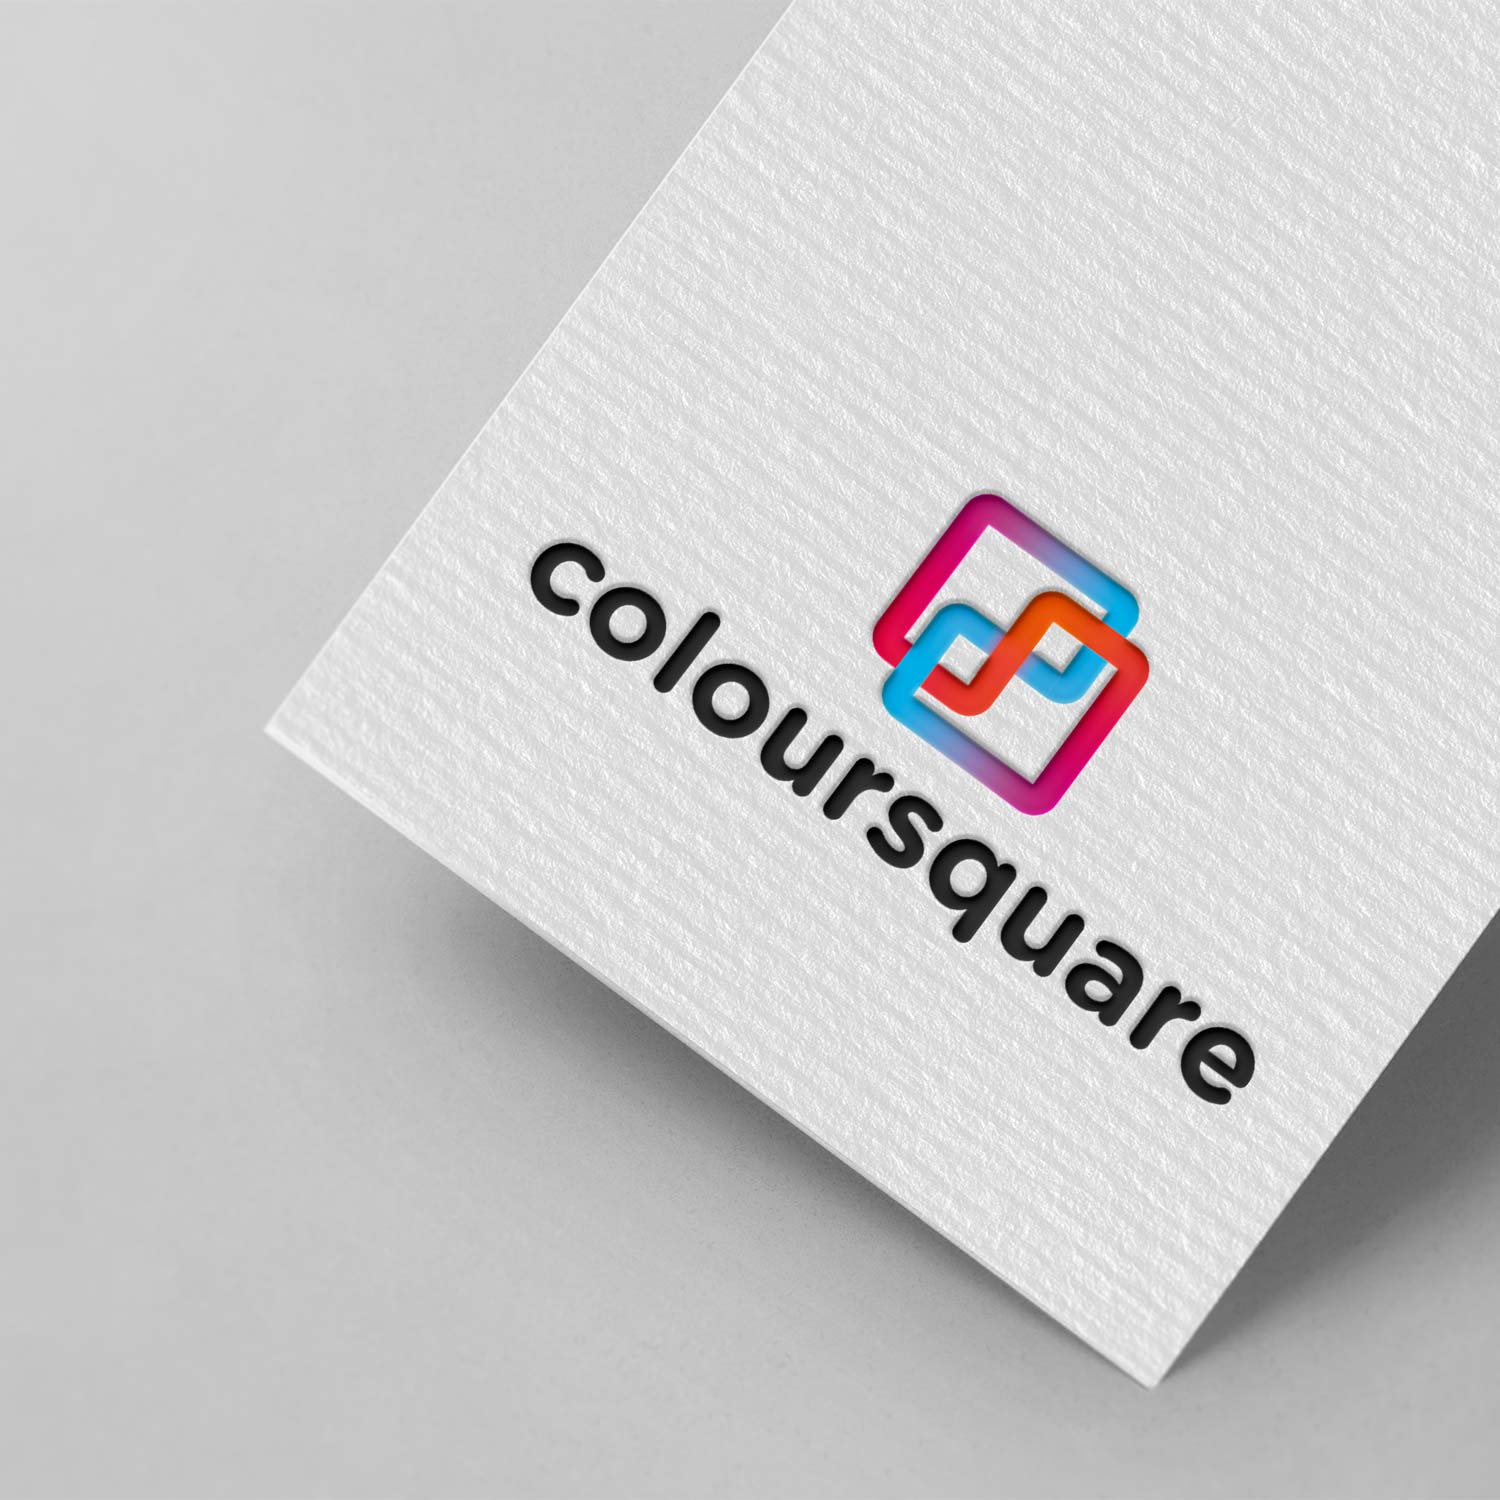 Logo Design Coloursquare